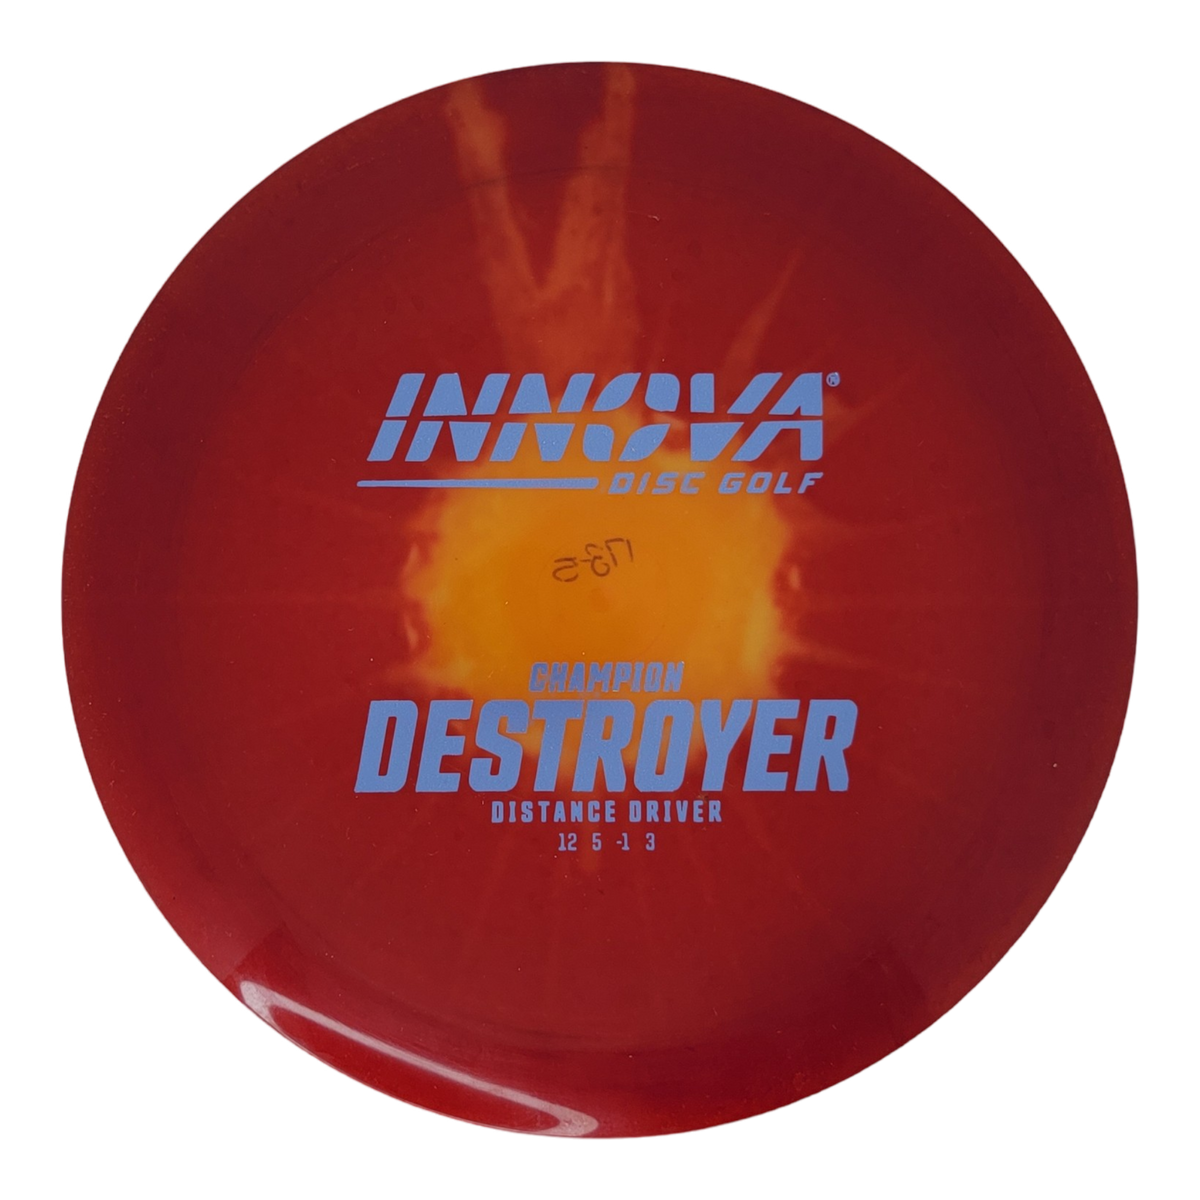 Innova Champion I-Dye Destroyer